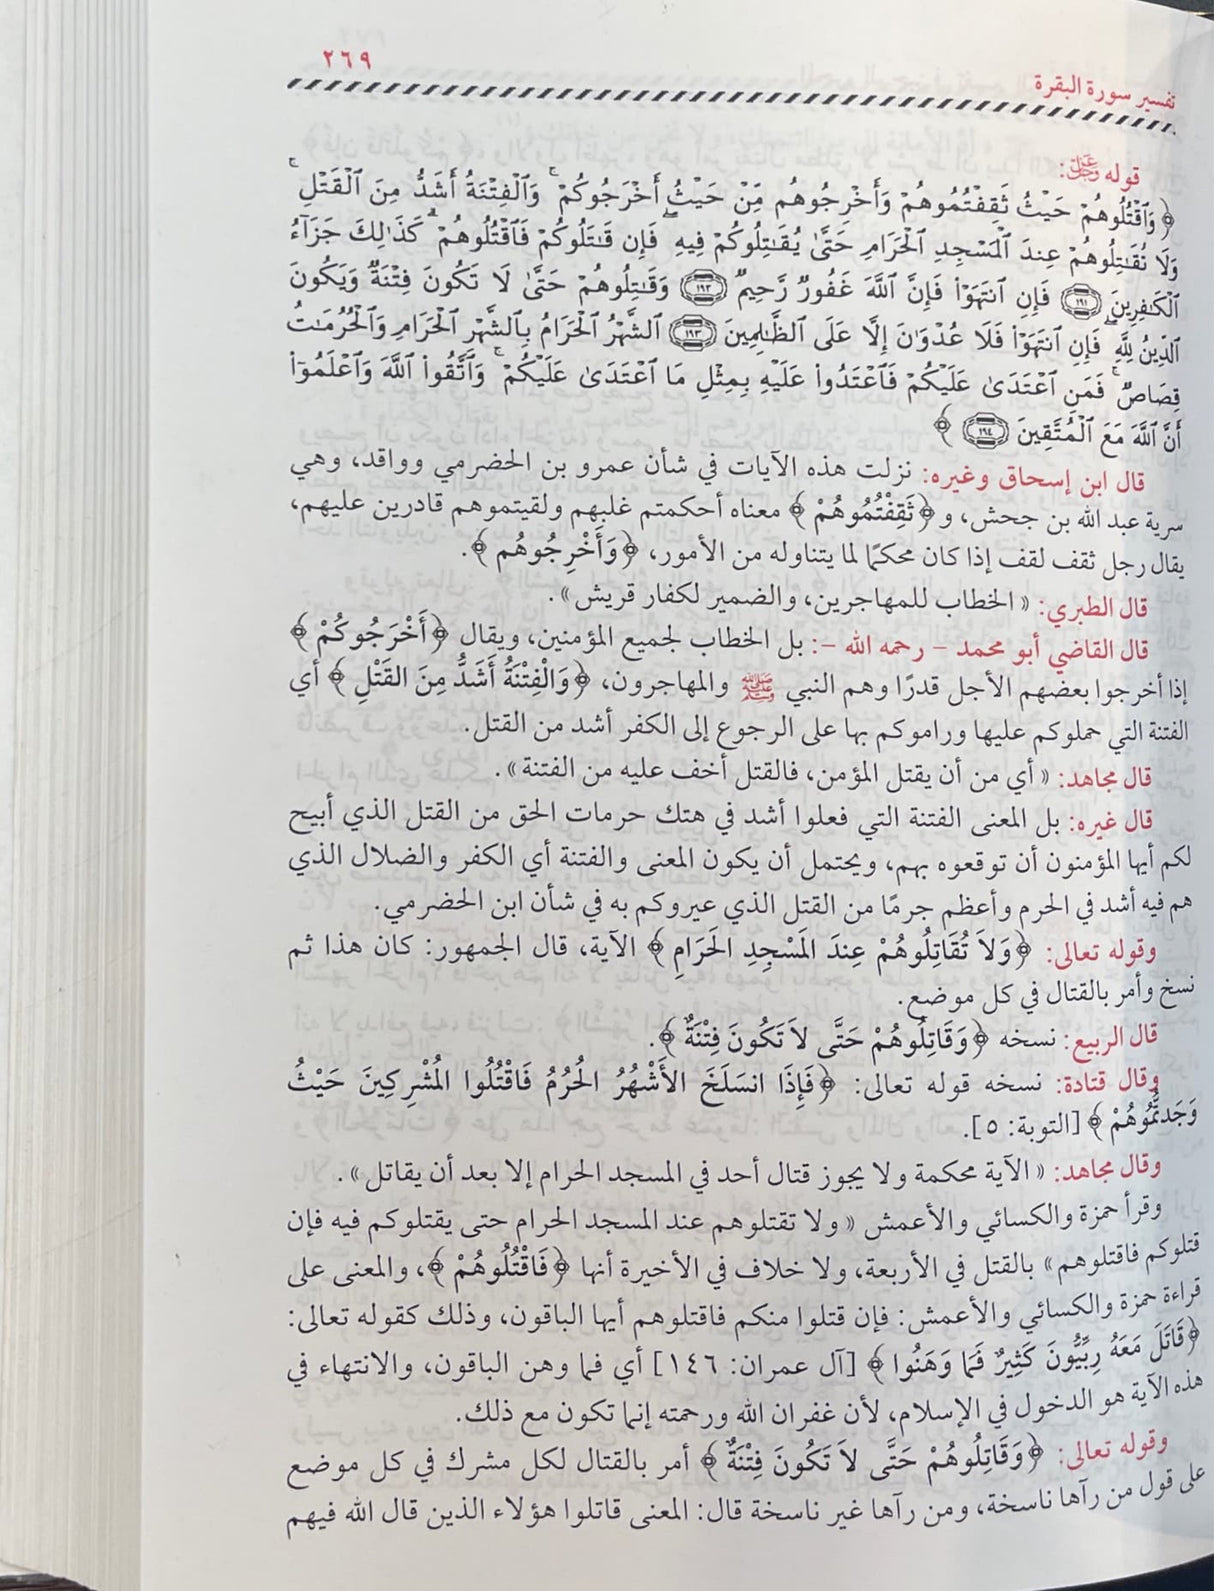 المحرر الوجيز في تفسير الكتاب العزيز    Al Muharrar Al Wajeez (5 Volume Set)